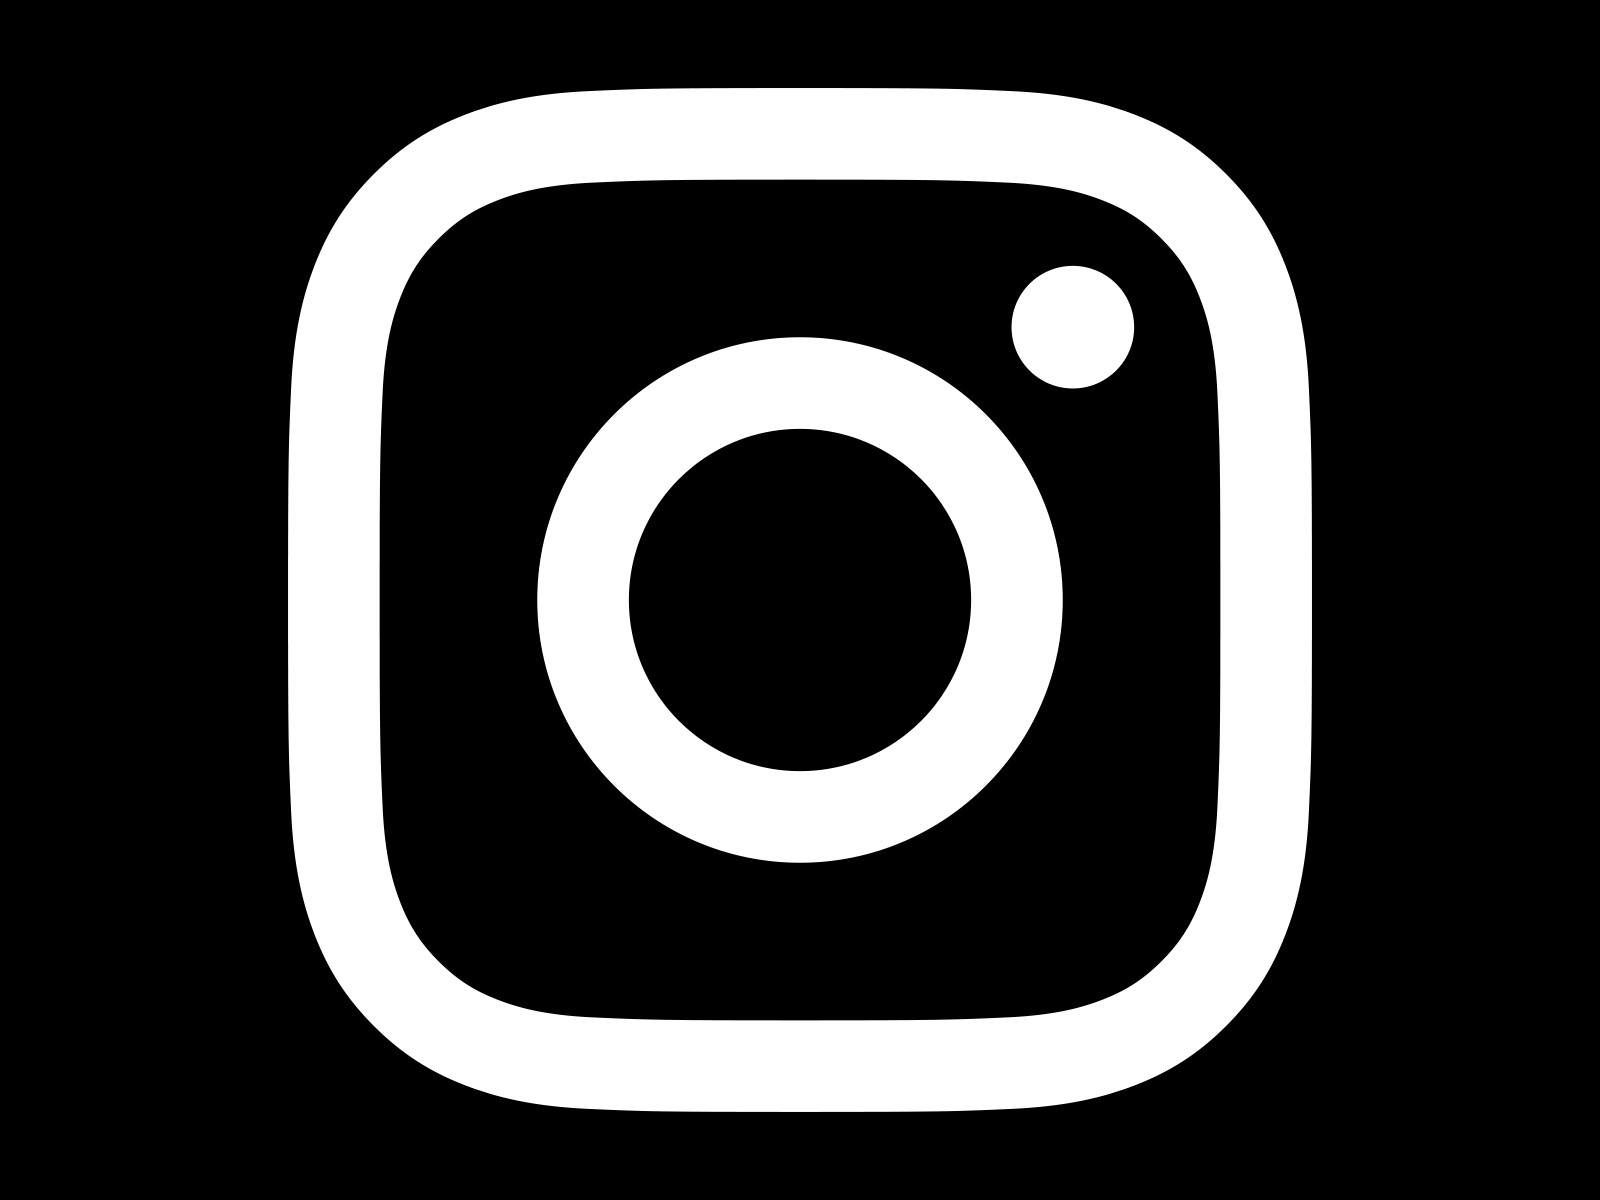 White and Black Logo - Instagram Logo PNG Transparent & SVG Vector